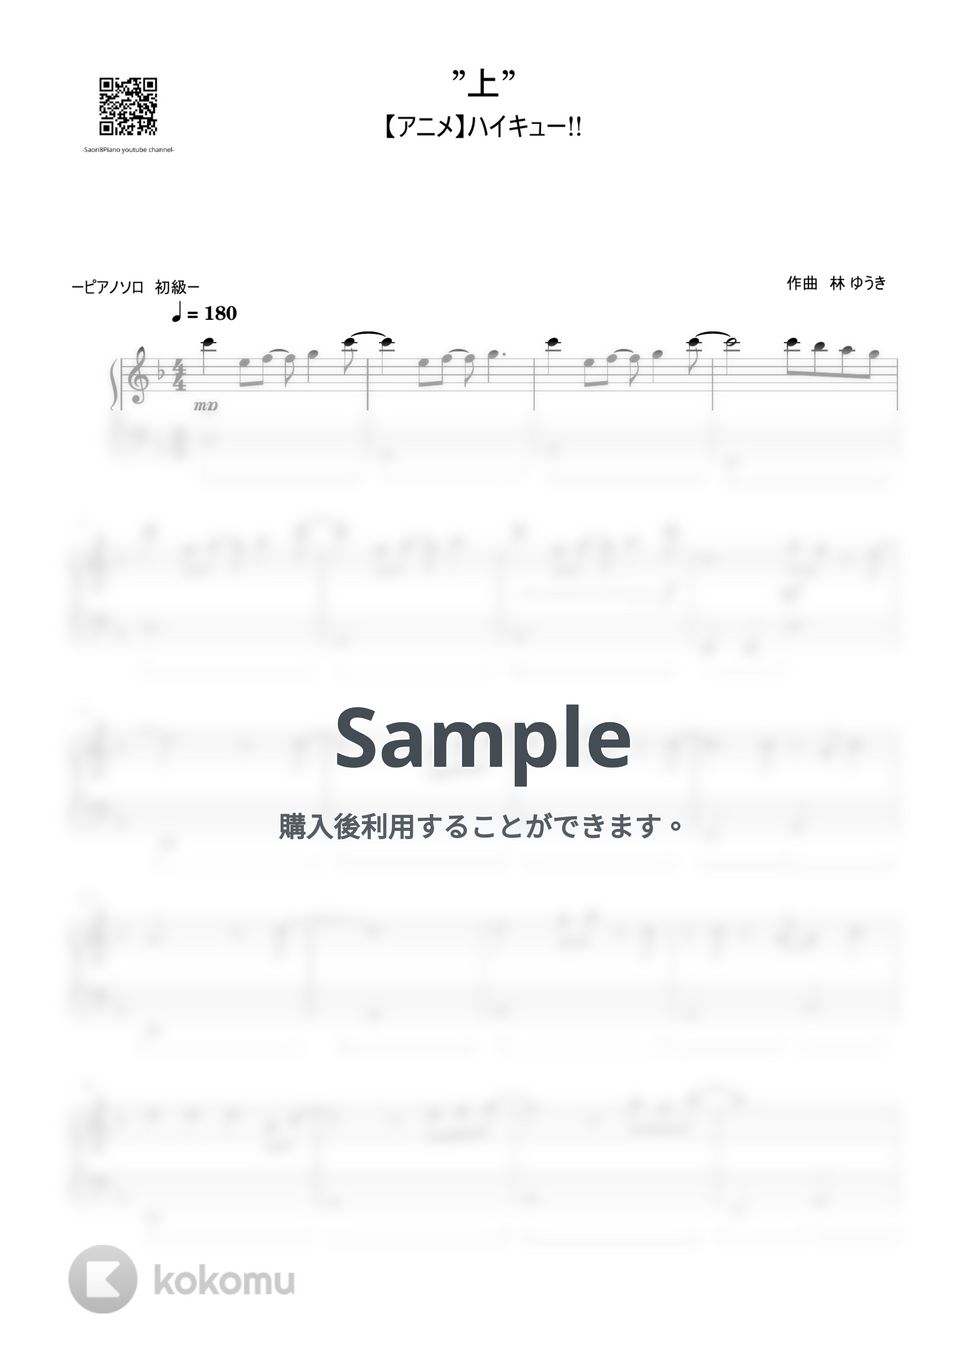 林ゆうき - "上" (ハイキューOST 初級レベル) by Saori8Piano